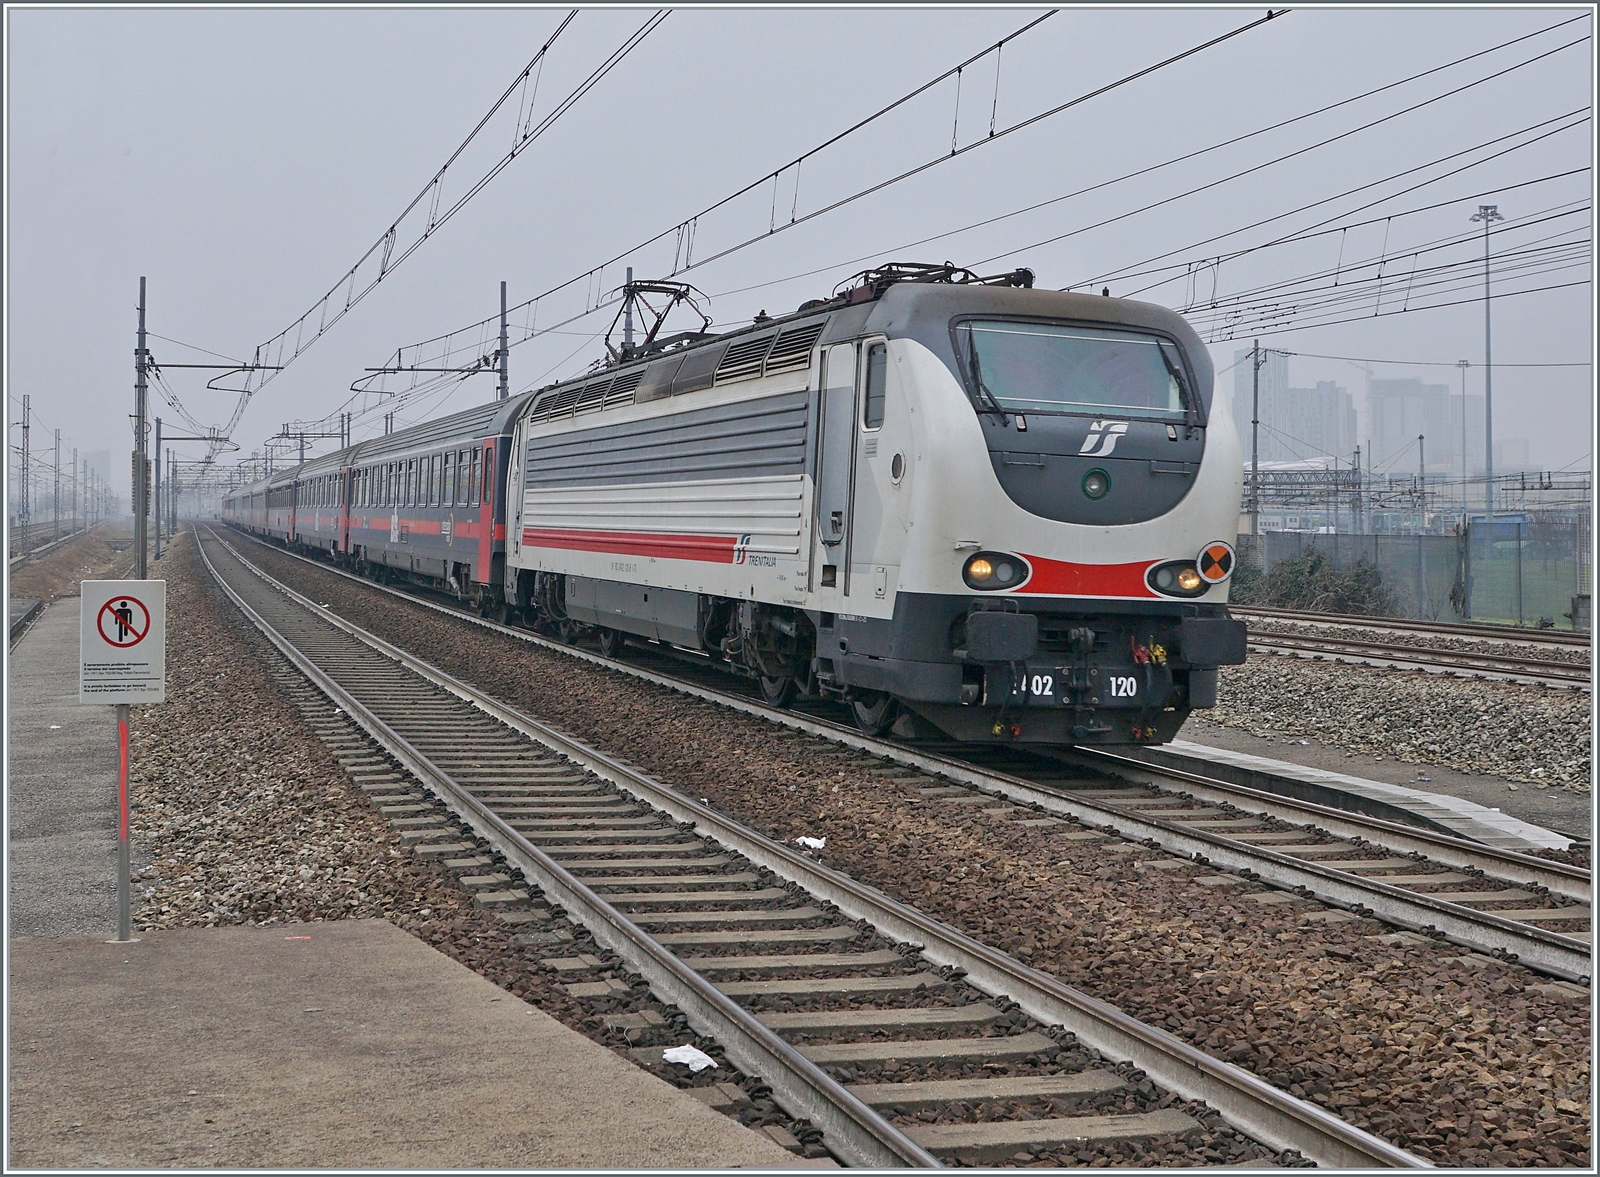 Die FS Trenitala E 402 120 und am Schluss des Zuges die 402 127 sind mit dem Treno di notte ICN 798 von Salerno nach Torino unterwegs. Der Zug erreicht den Bahnhof Rho Fiera Milano, wo der Zug ohne Halt durchfährt.

24. Februar 2023